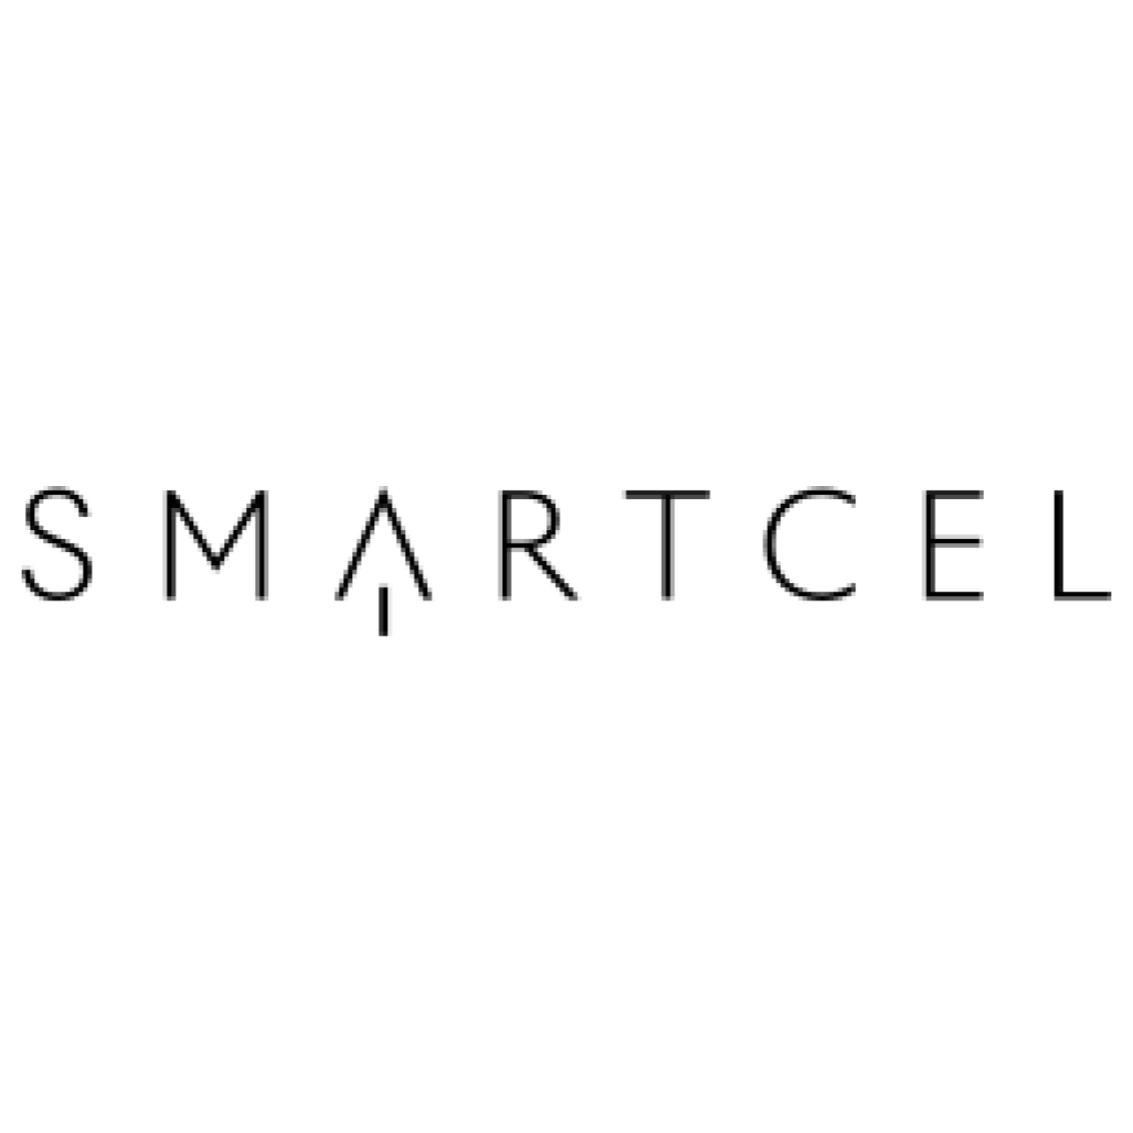 SmartFiber, Smartcel, Logo